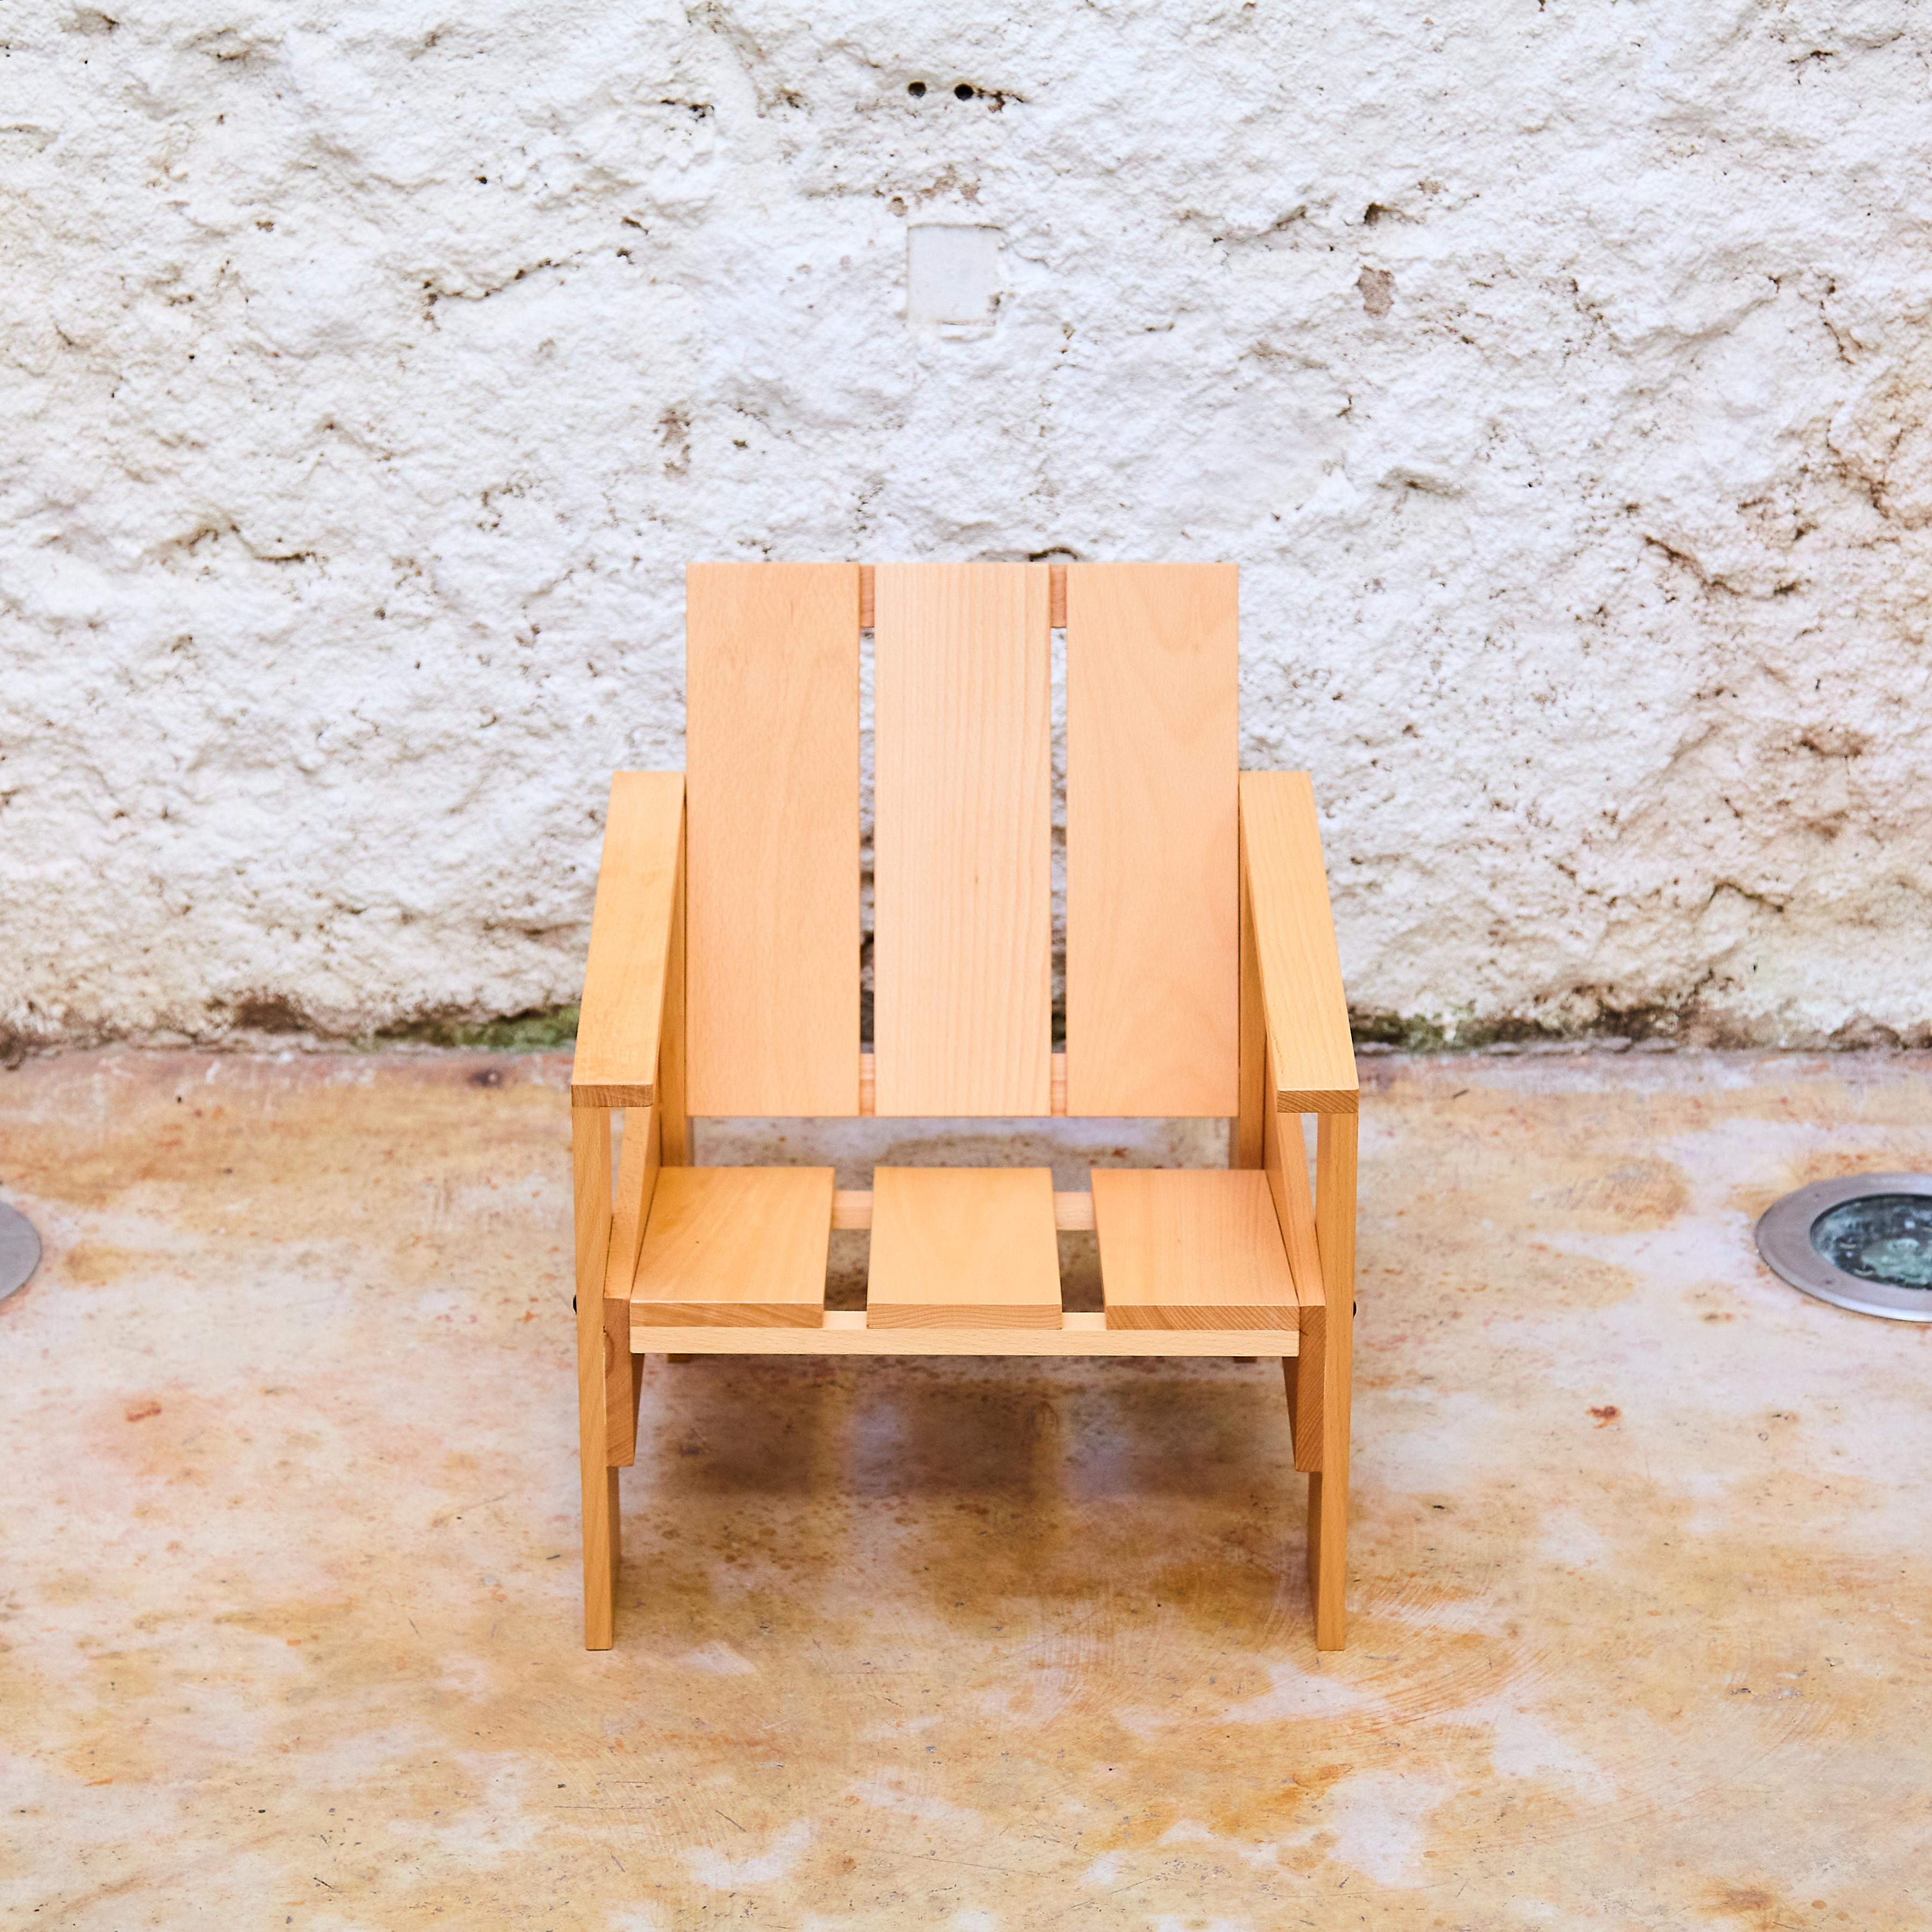 Niedriger Schubladenstuhl aus Naturholz mit Lack für Kinder von Gerrit Rietveld. Produziert von der Familie Rietveld mit individueller Nummer und Chip. Schönes und lustiges Design. Dieser Stuhl hat die Seriennummer: CCLS 00772.

Hergestellt in den